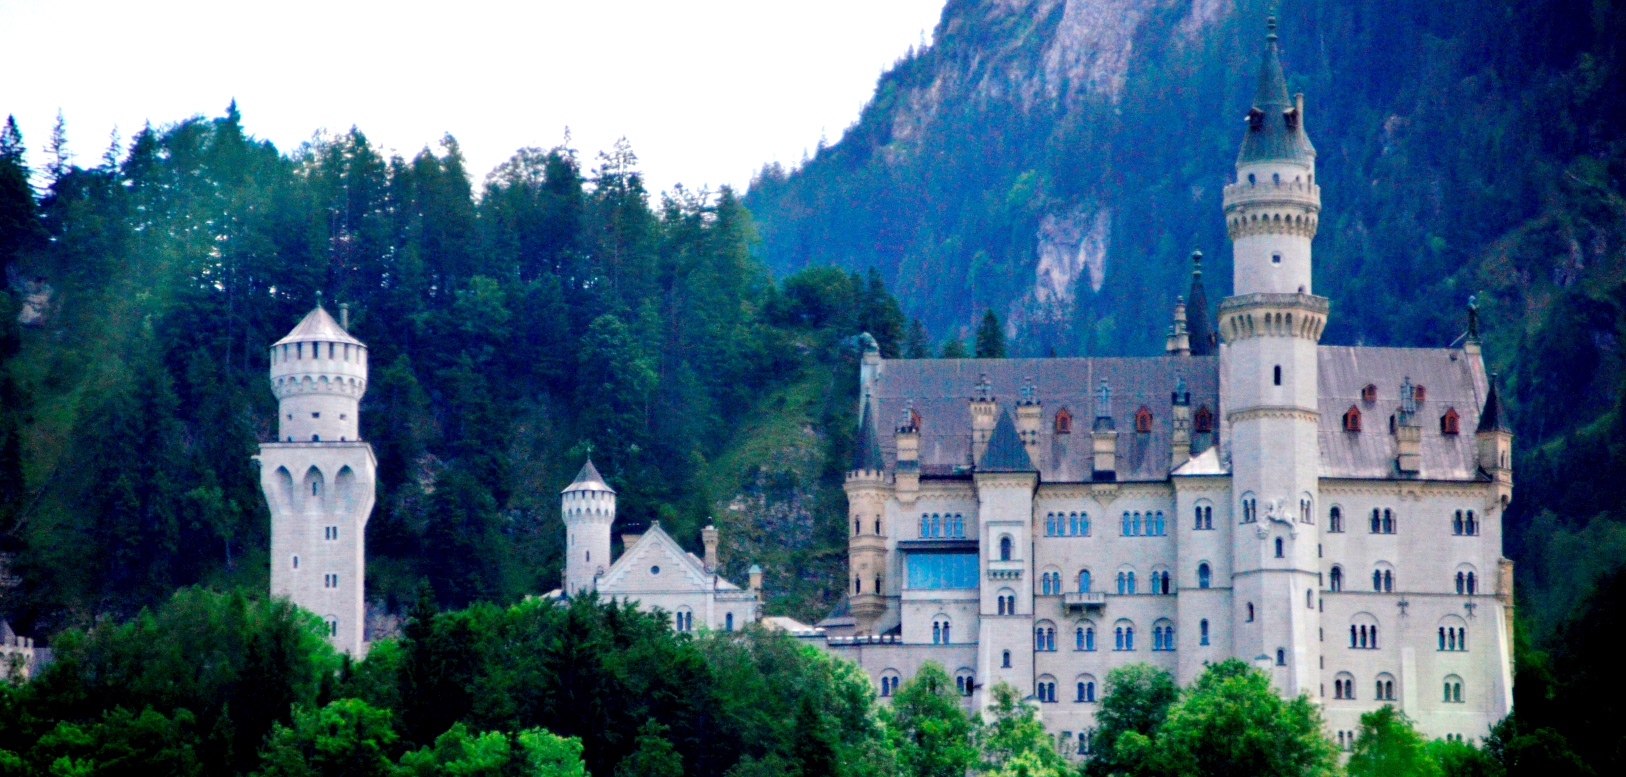 Neuschwanstein Castle, Bavaria